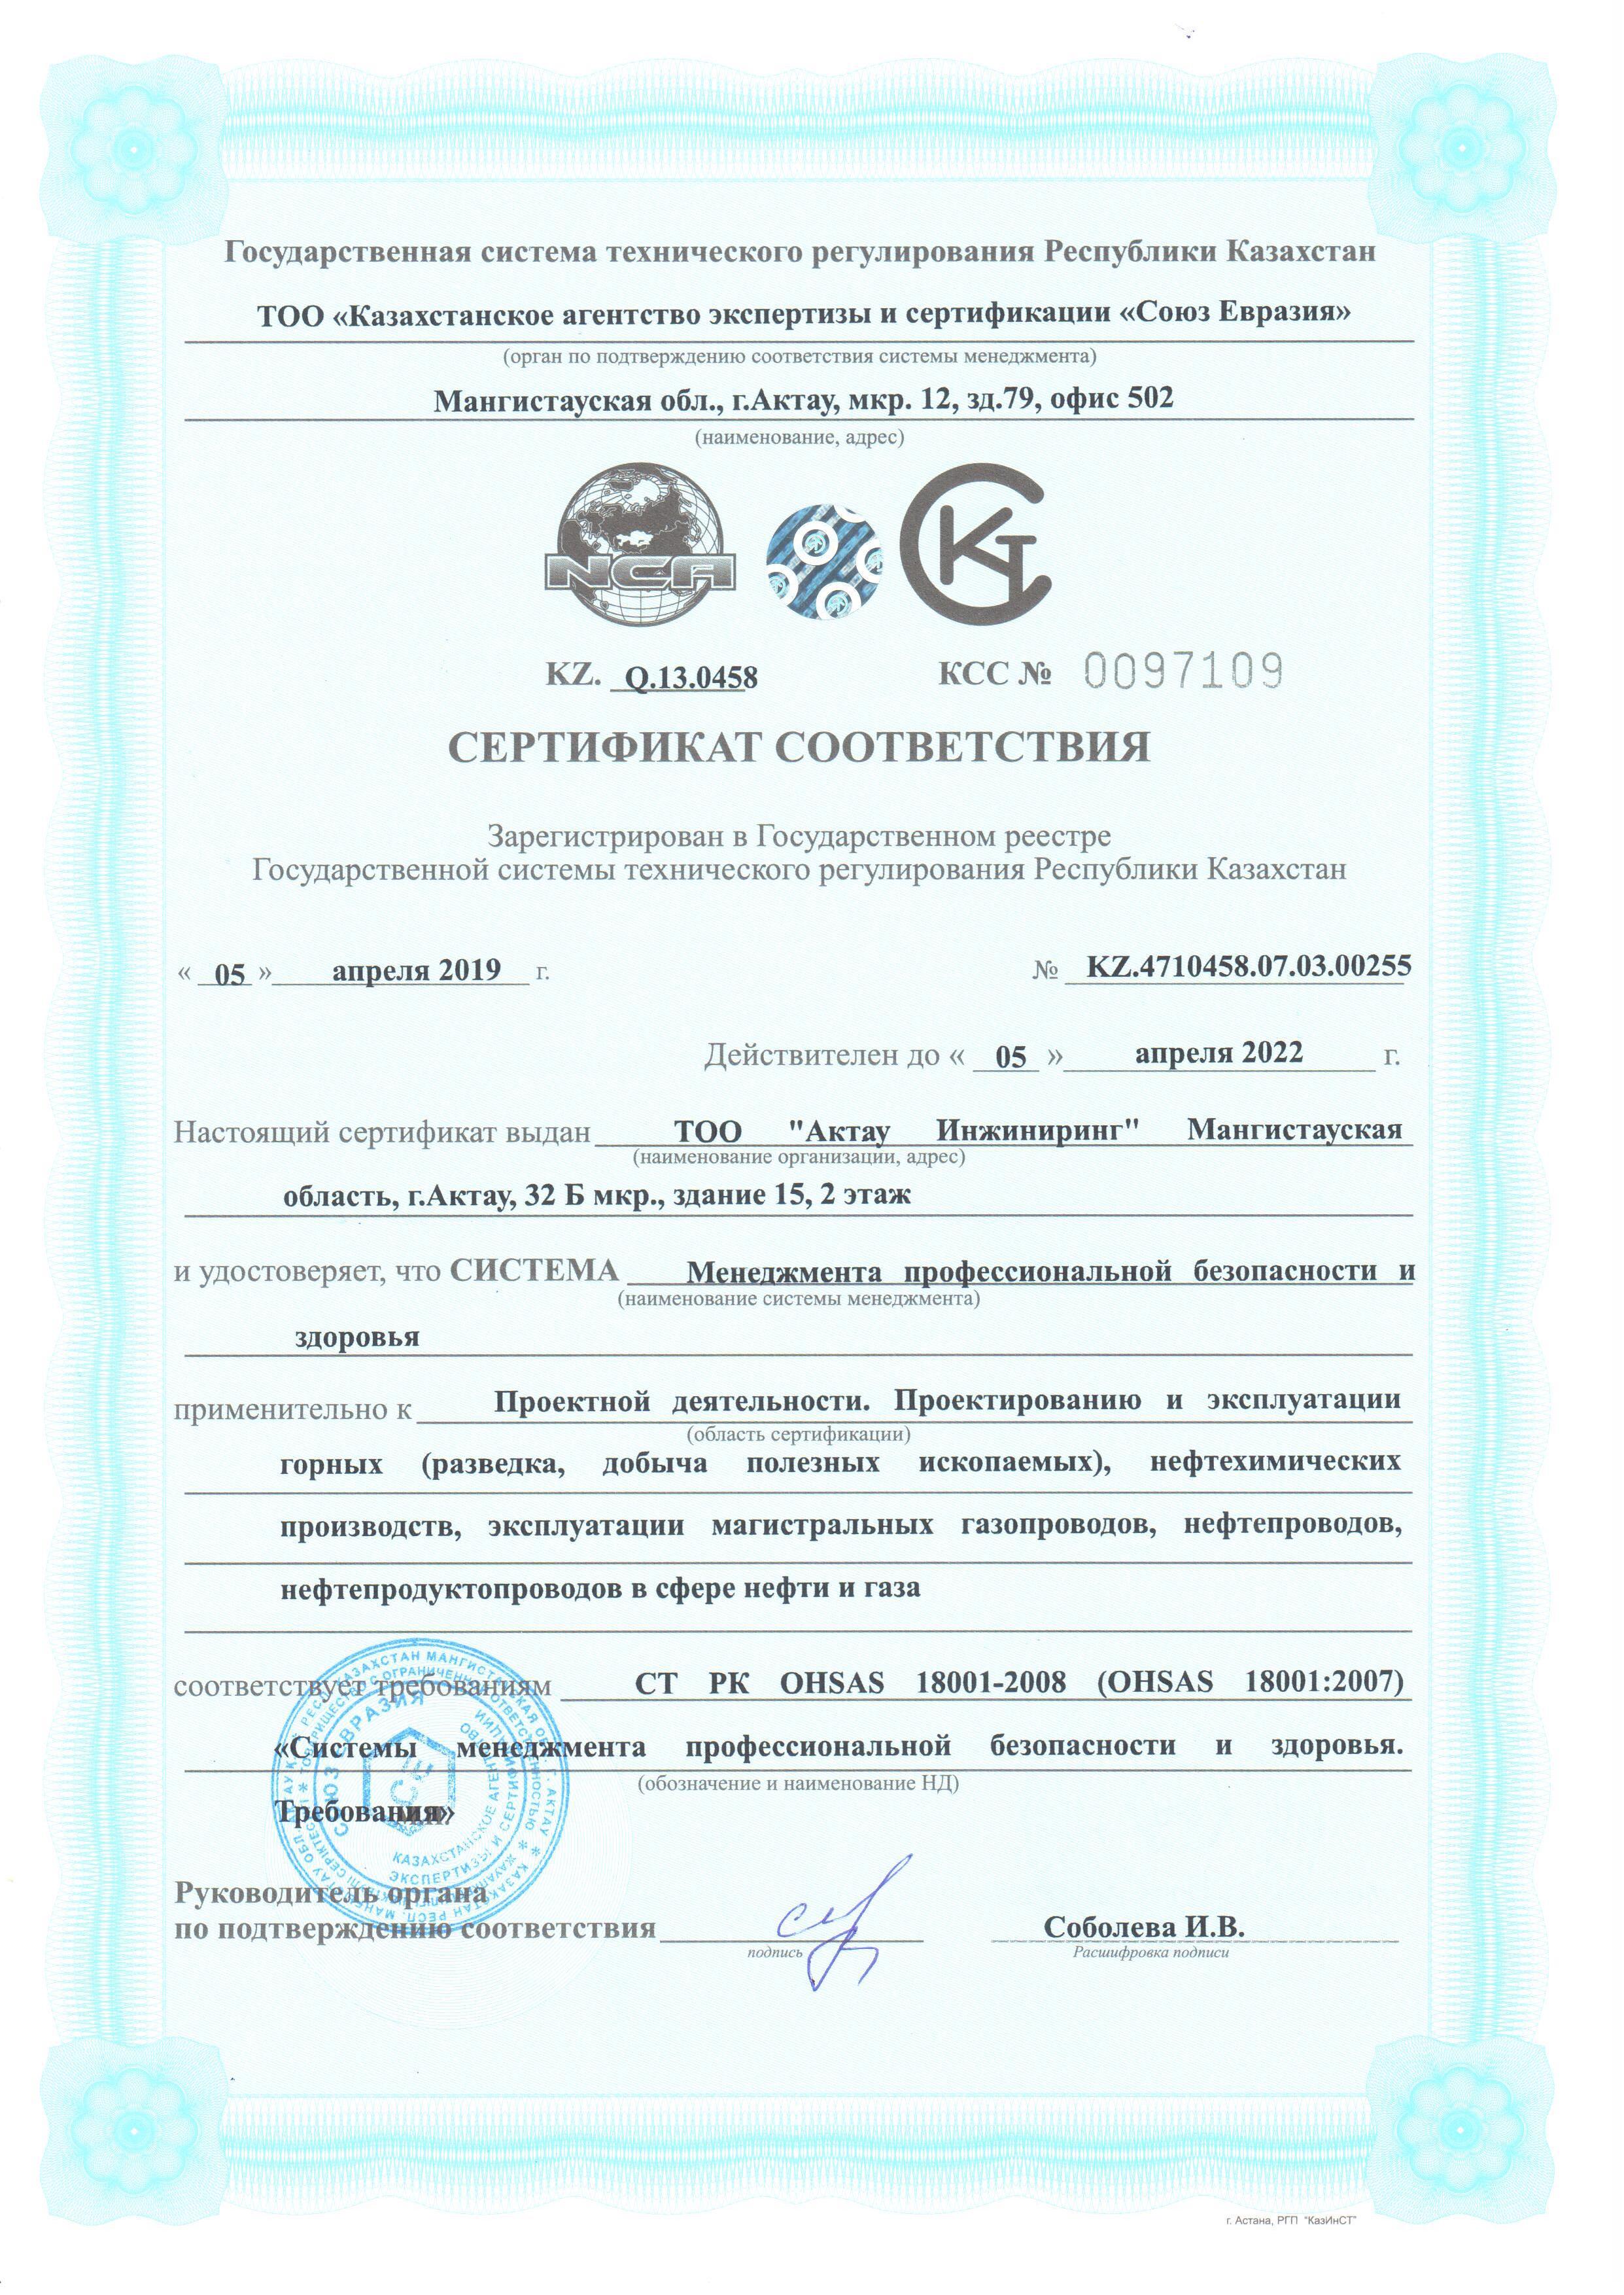 Сертификат проф.без.и здор. CT РК ISO 18001-2008 - 0001